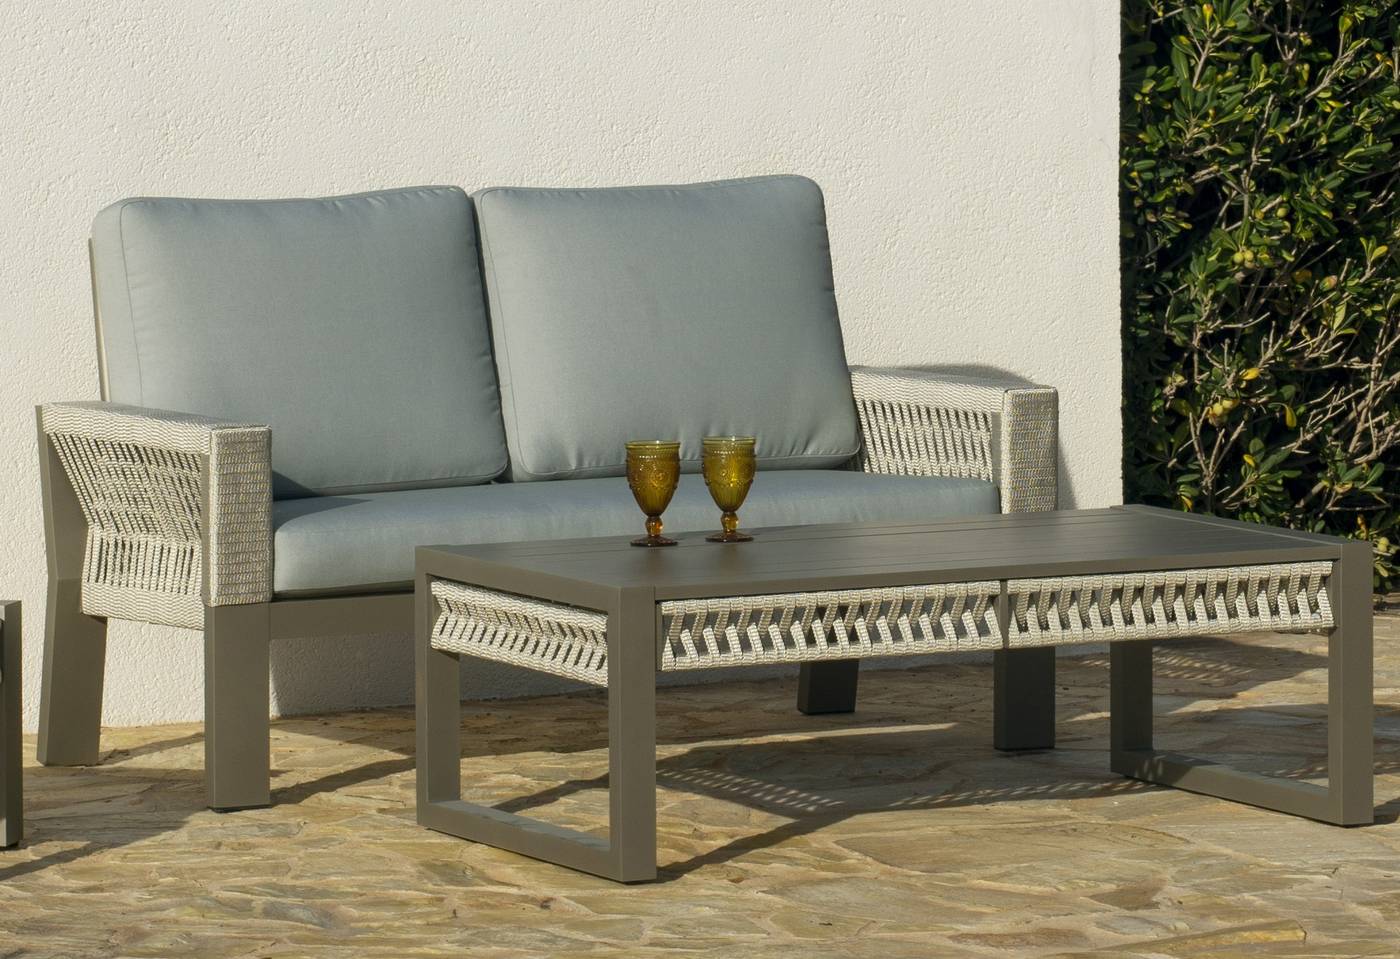 Set Aluminio Estambul-9 - Conjunto aluminio-cuerda: 1 sofá de 2 plazas + 2 sillones + 1 mesa de centro + 2 taburetes. Disponible en color blanco, gris, marrón o champagne.